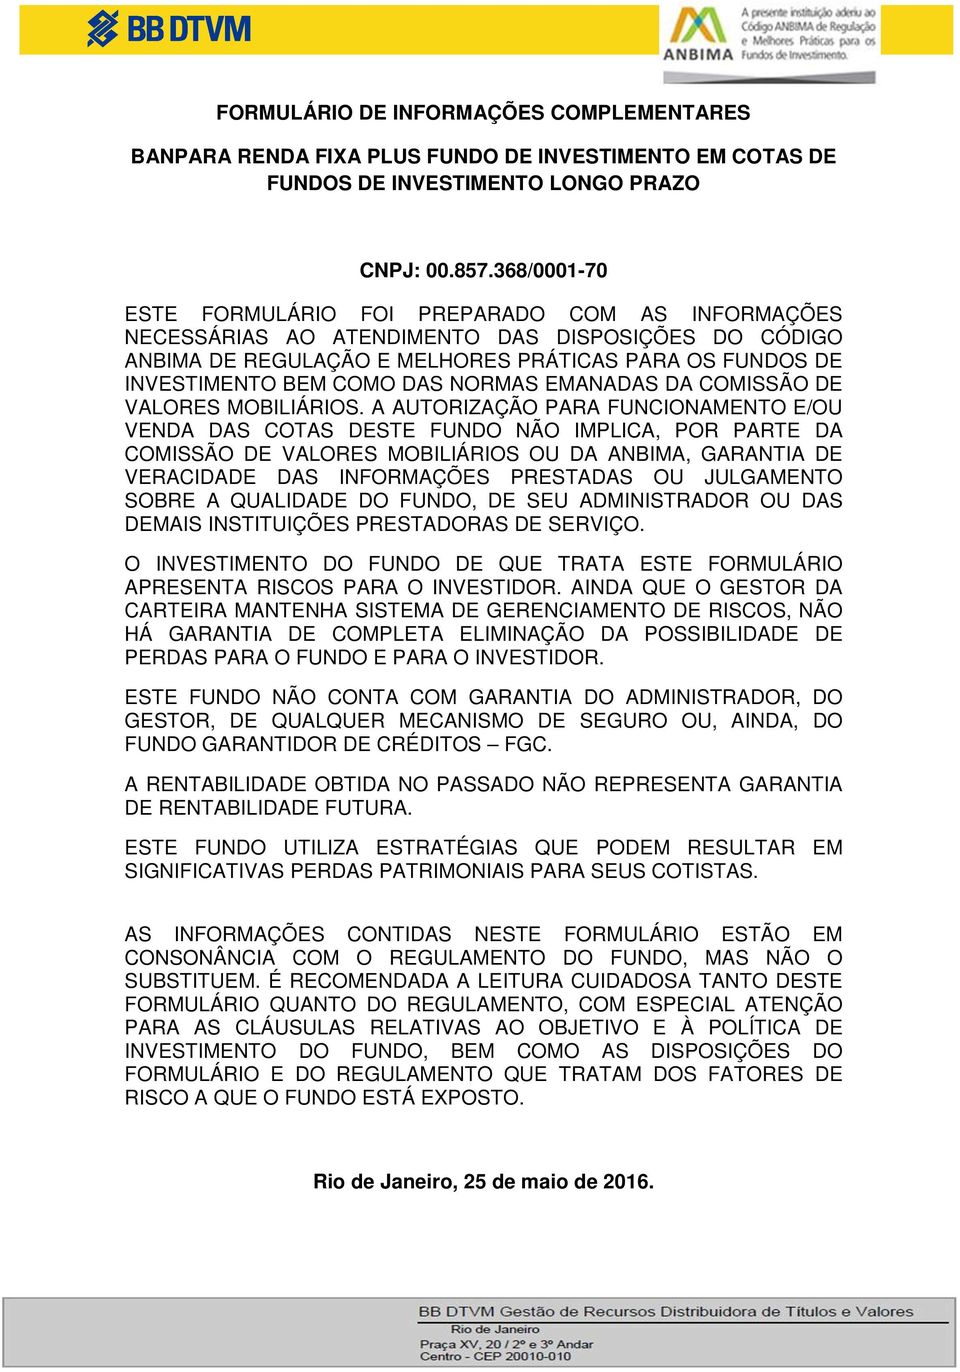 NORMAS EMANADAS DA COMISSÃO DE VALORES MOBILIÁRIOS.